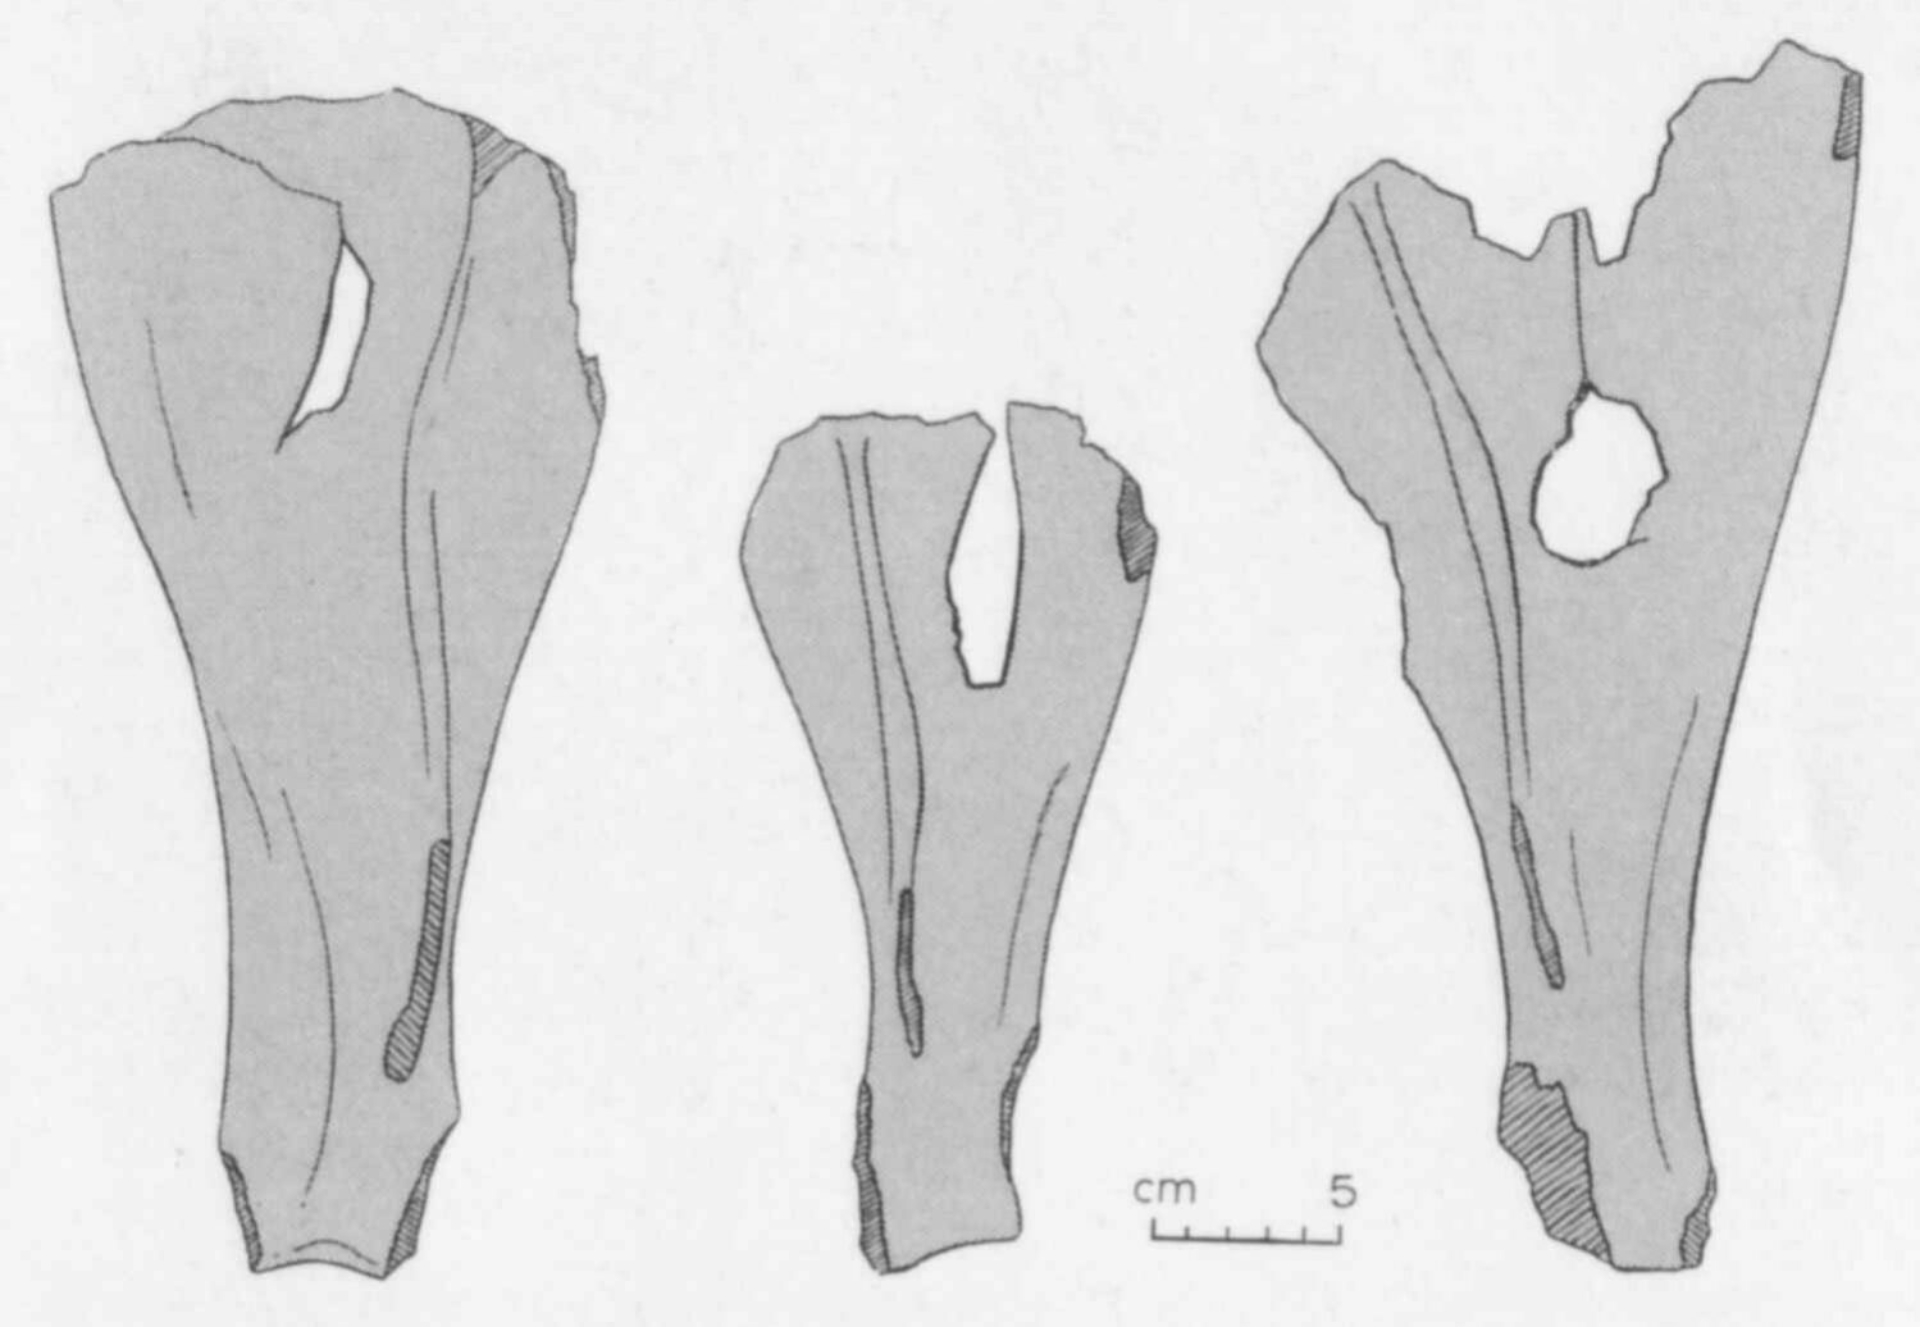 Augusta Raurica - Schulterblätter vom Rind mit einem Loch in der Mitte, vielleicht von einem Fleischhacken - Bild Augusta Raurica